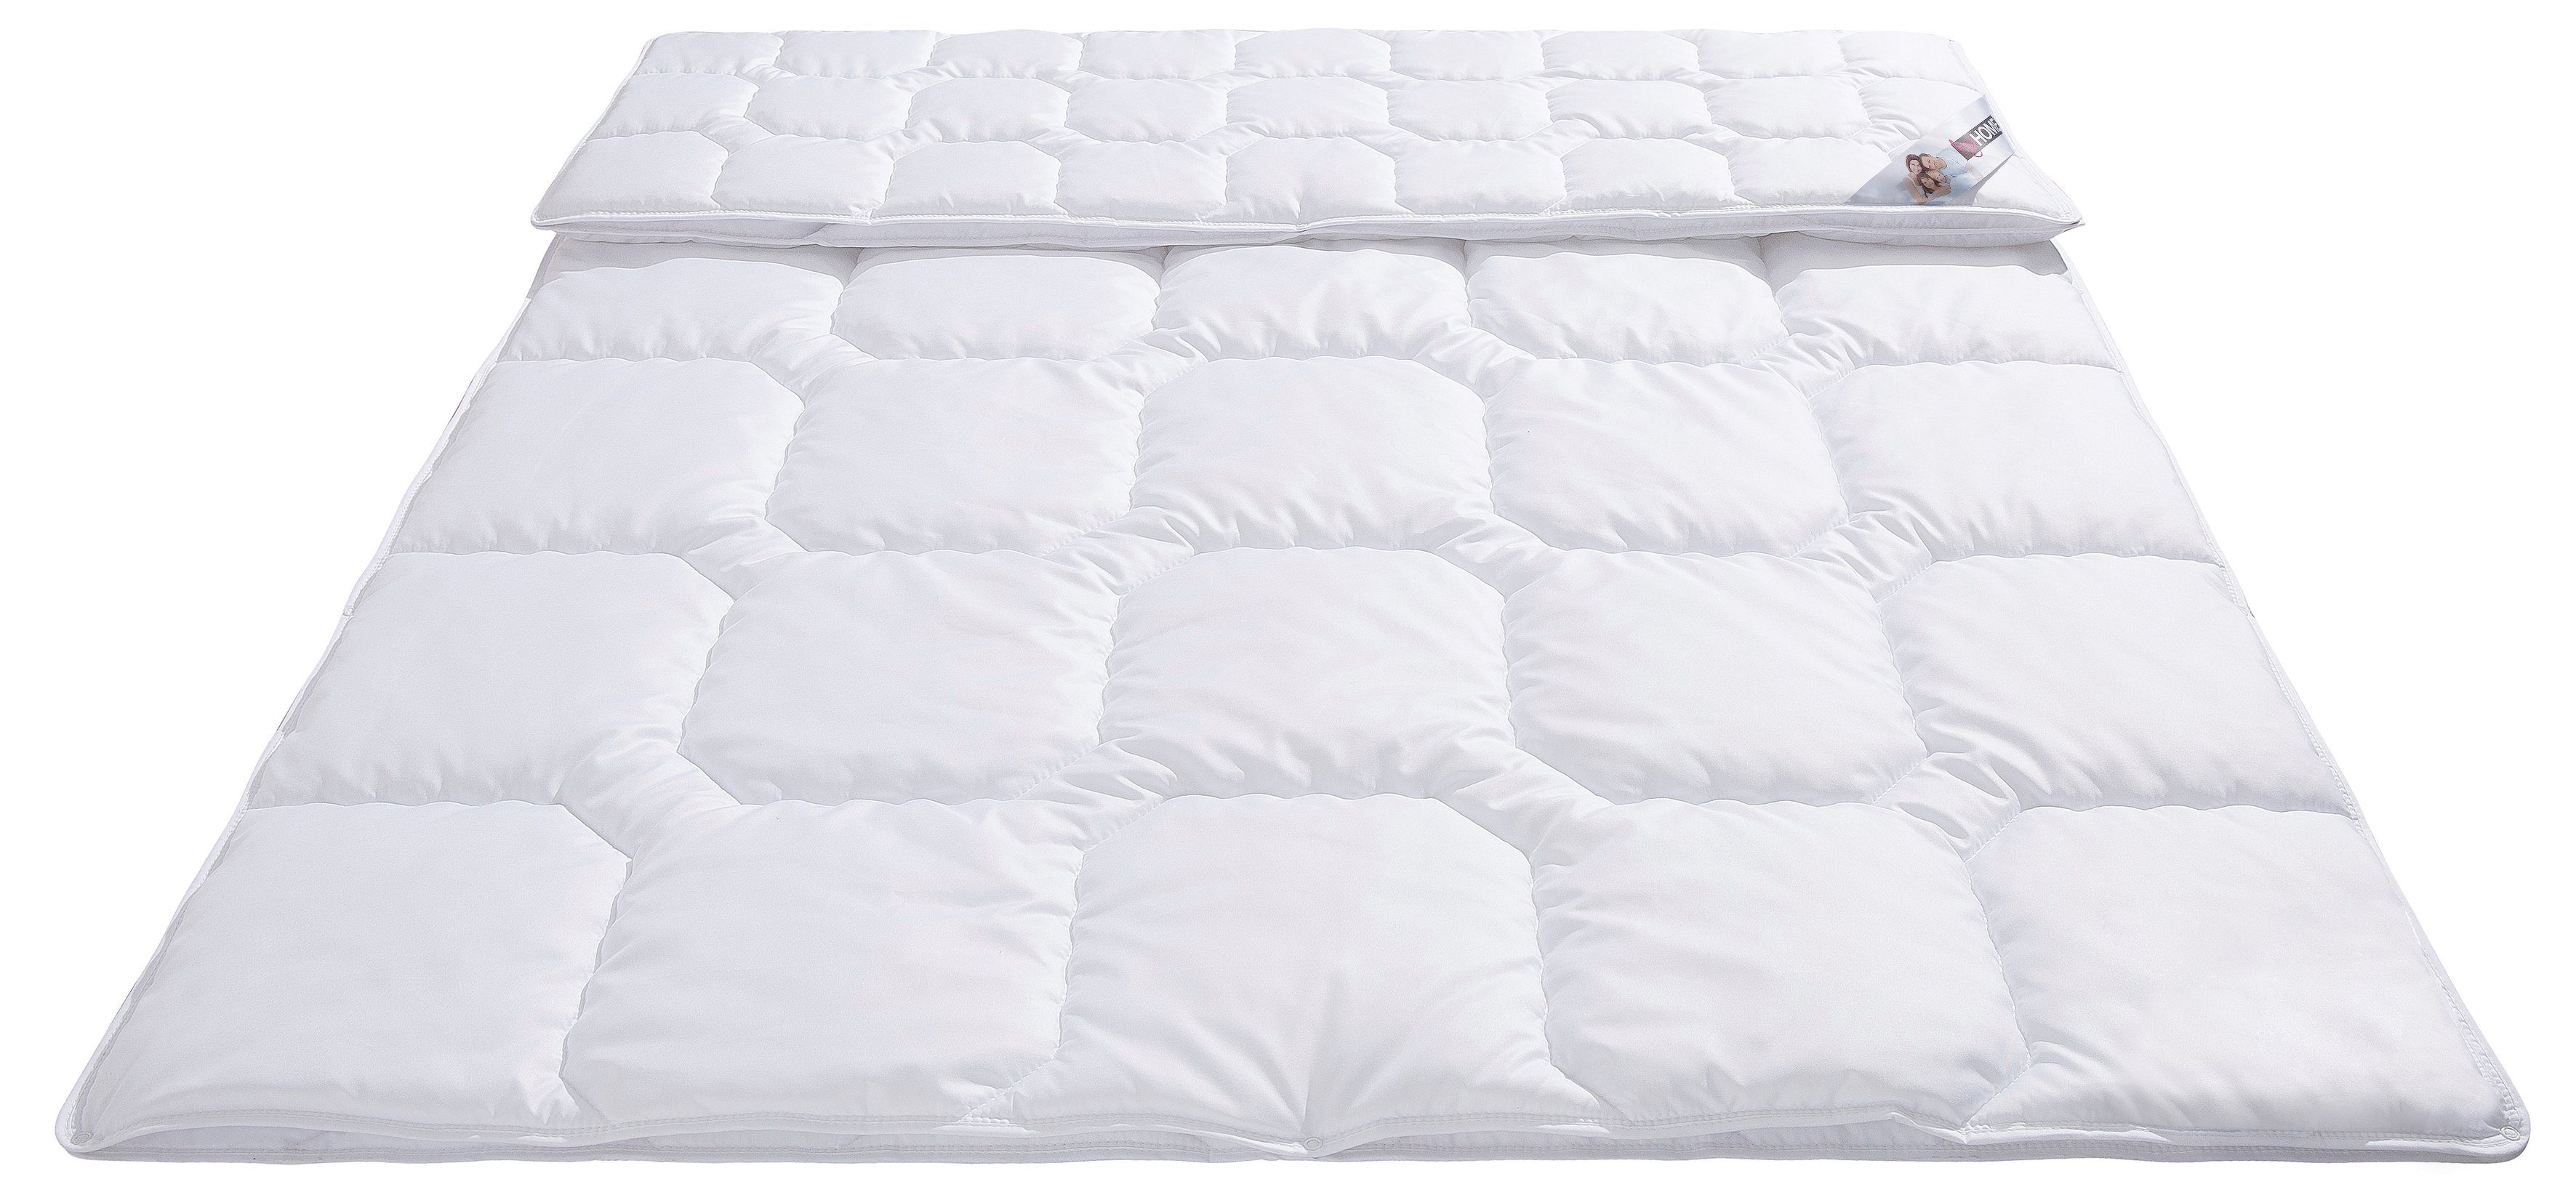 my home Synthetisch dekbed Fantasy ECO Bettdecken mit nachhaltiger Faser, in den Größen 135x200,155x220,200x200 und 200x220 und warm und als 4-Jahreszeiten Bettdecke erhältlich 5 s